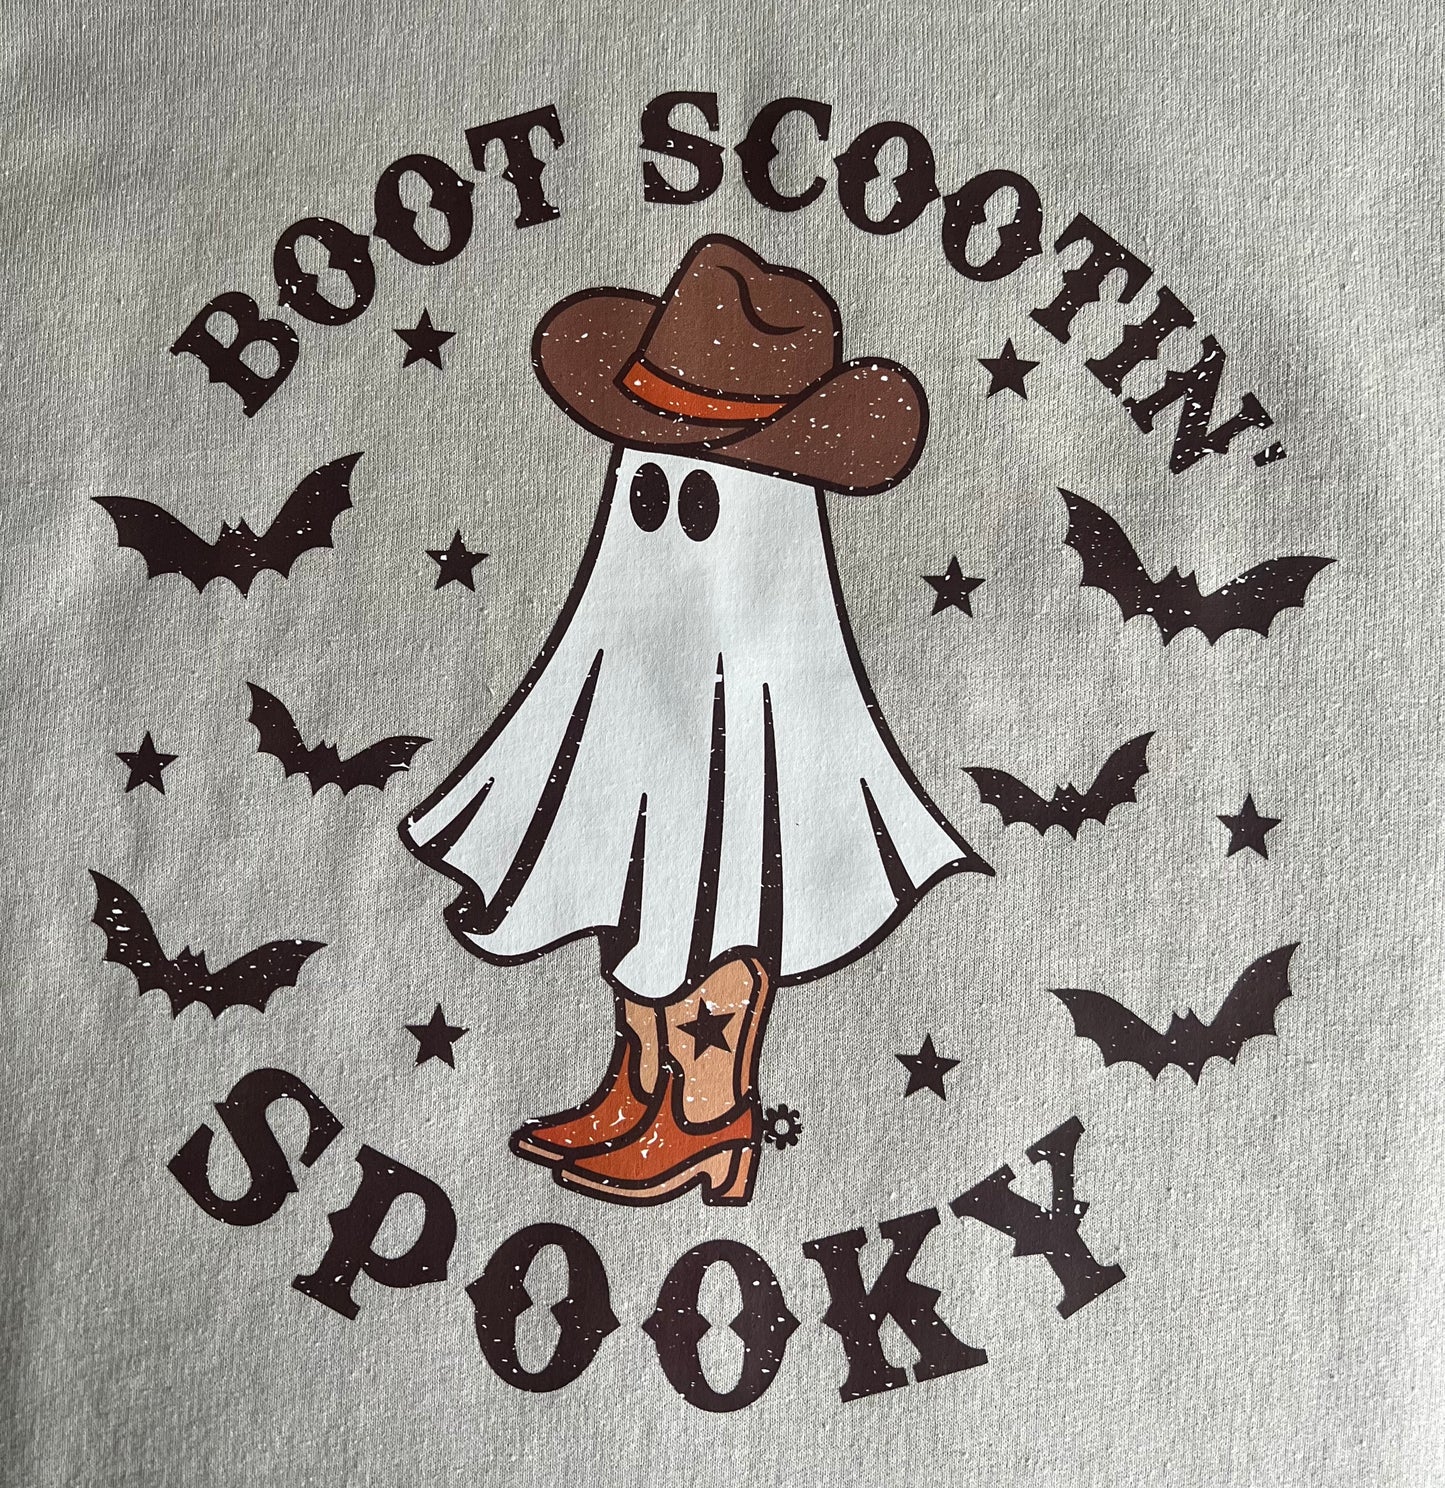 Boot Scootin' Spooky Sweatshirt